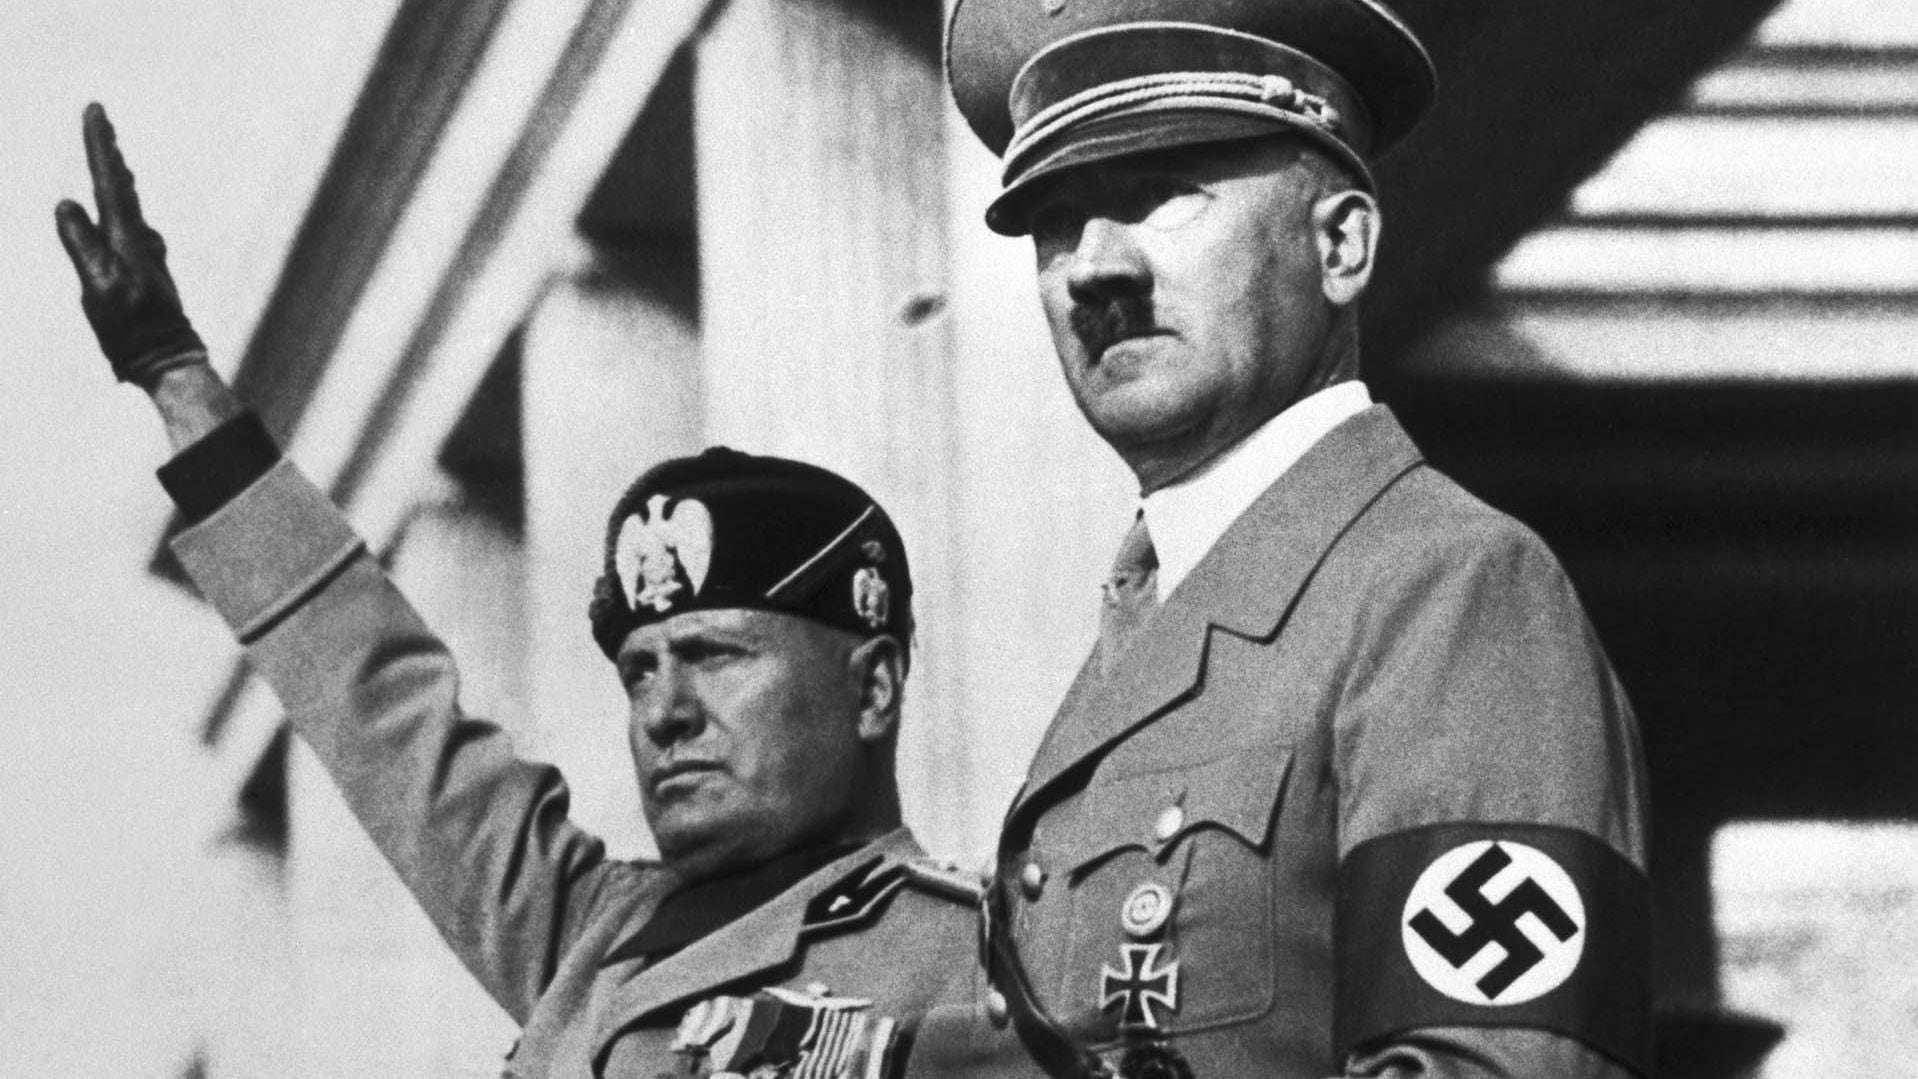 La misma tarde del atentado, Hitler recibió a Mussolini en su bunker de Rastenburg. "Me han querido matar", le dijo mientras le mostraba el estado en había quedado la oficina. Cuatro oficiales cercanos murieron y él sólo sufrió rasguños